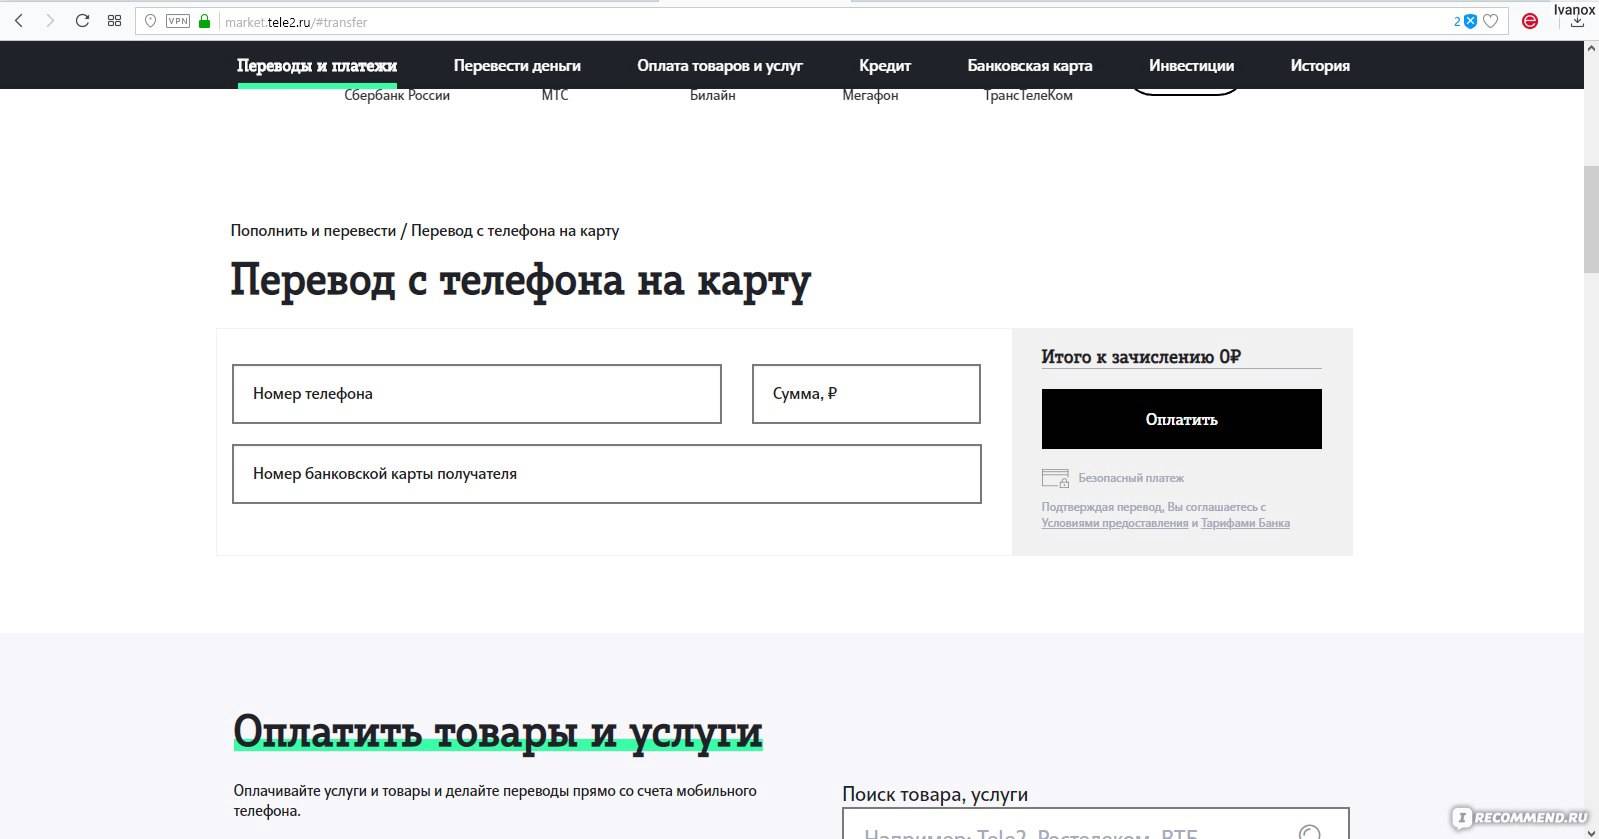 Услуга теле2 «мобильный перевод» - tele2wiki.ru